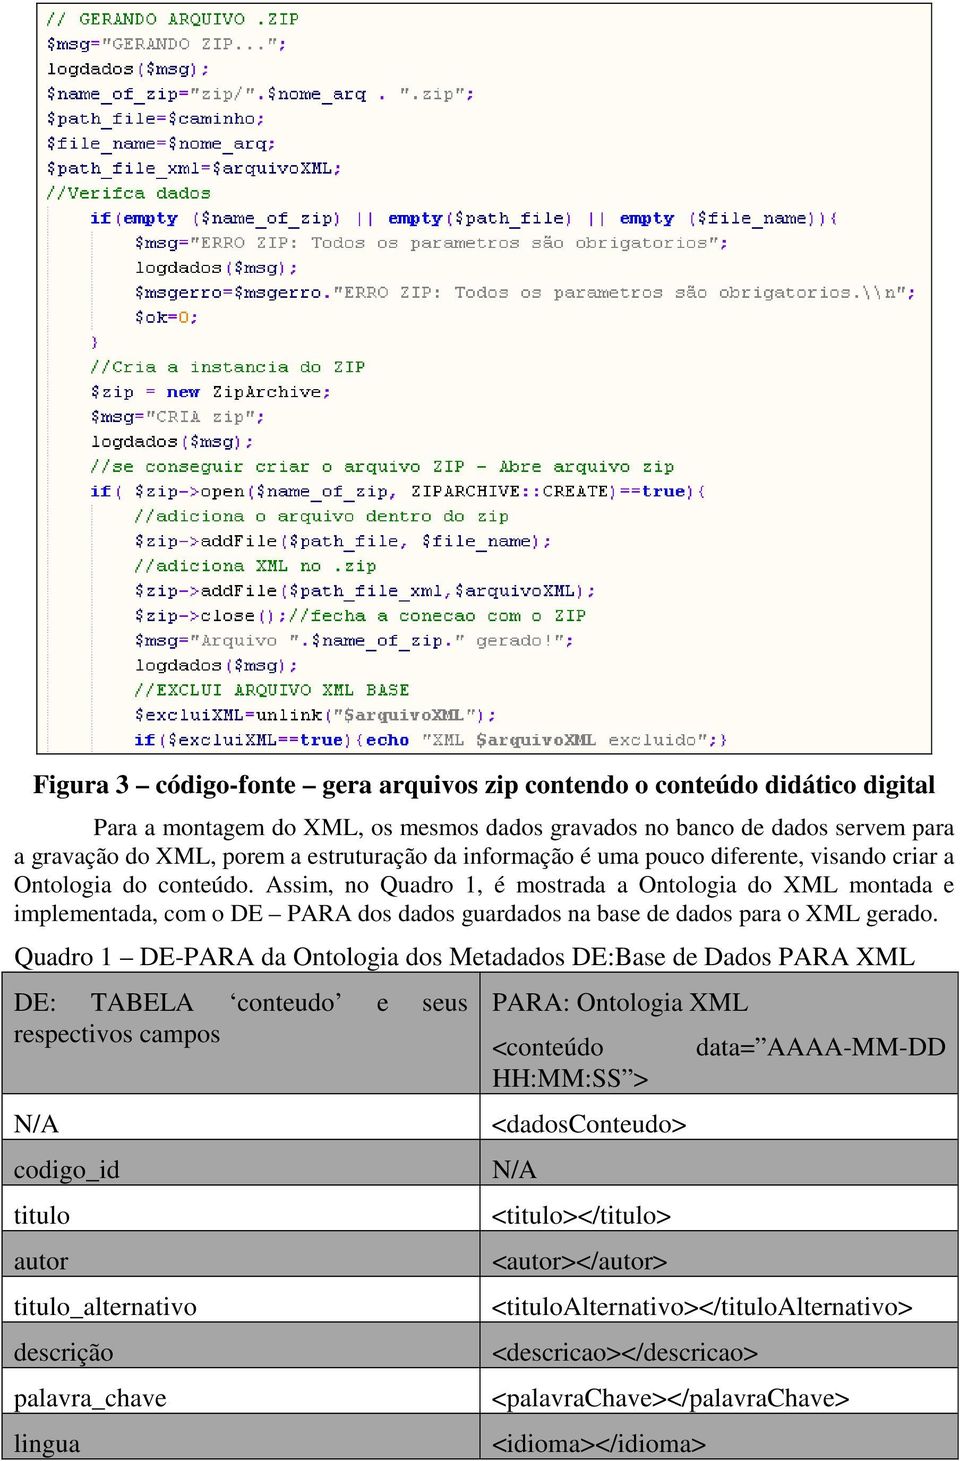 Assim, no Quadro 1, é mostrada a Ontologia do XML montada e implementada, com o DE PARA dos dados guardados na base de dados para o XML gerado.